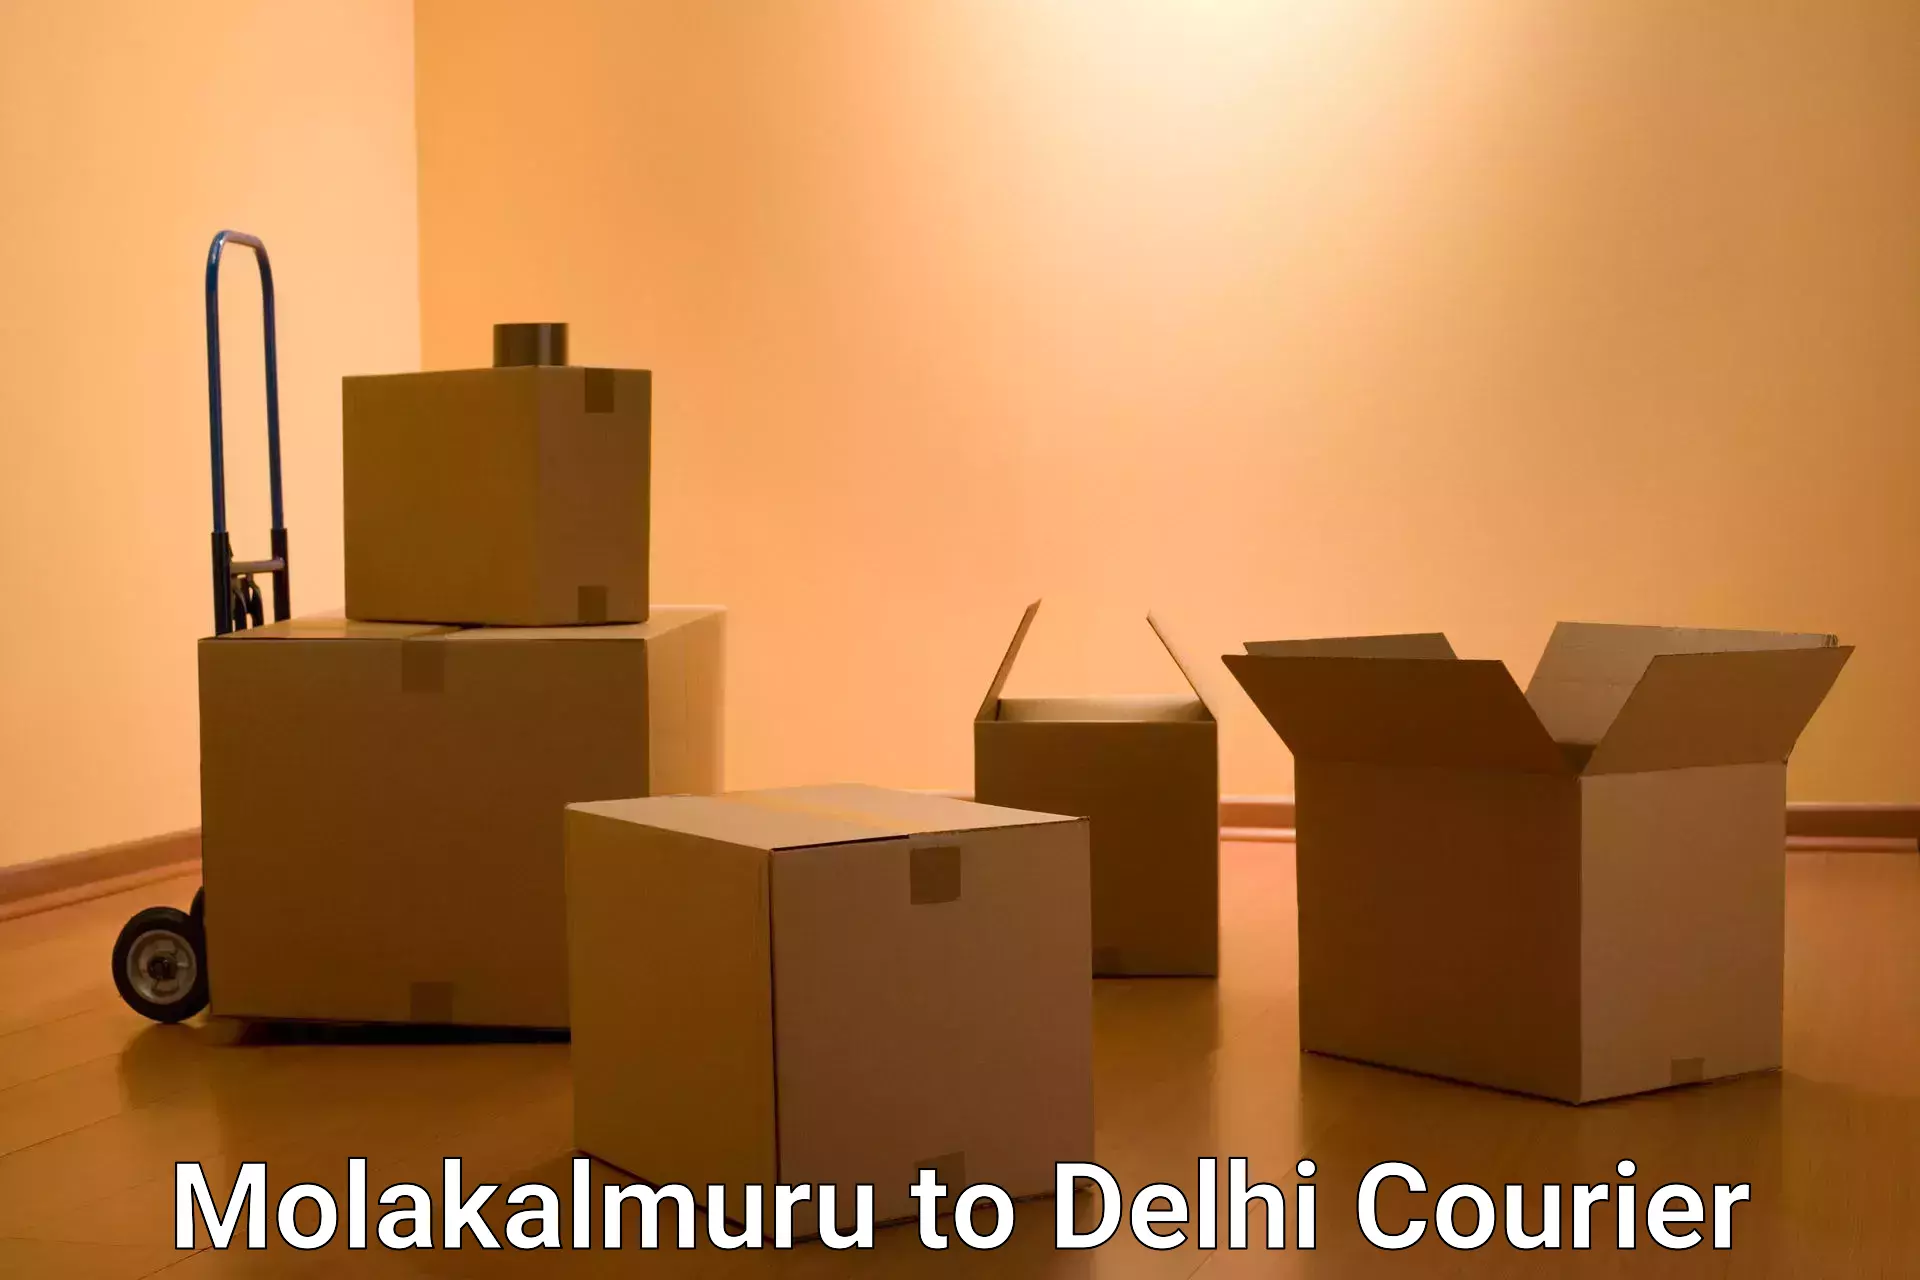 User-friendly delivery service Molakalmuru to Delhi